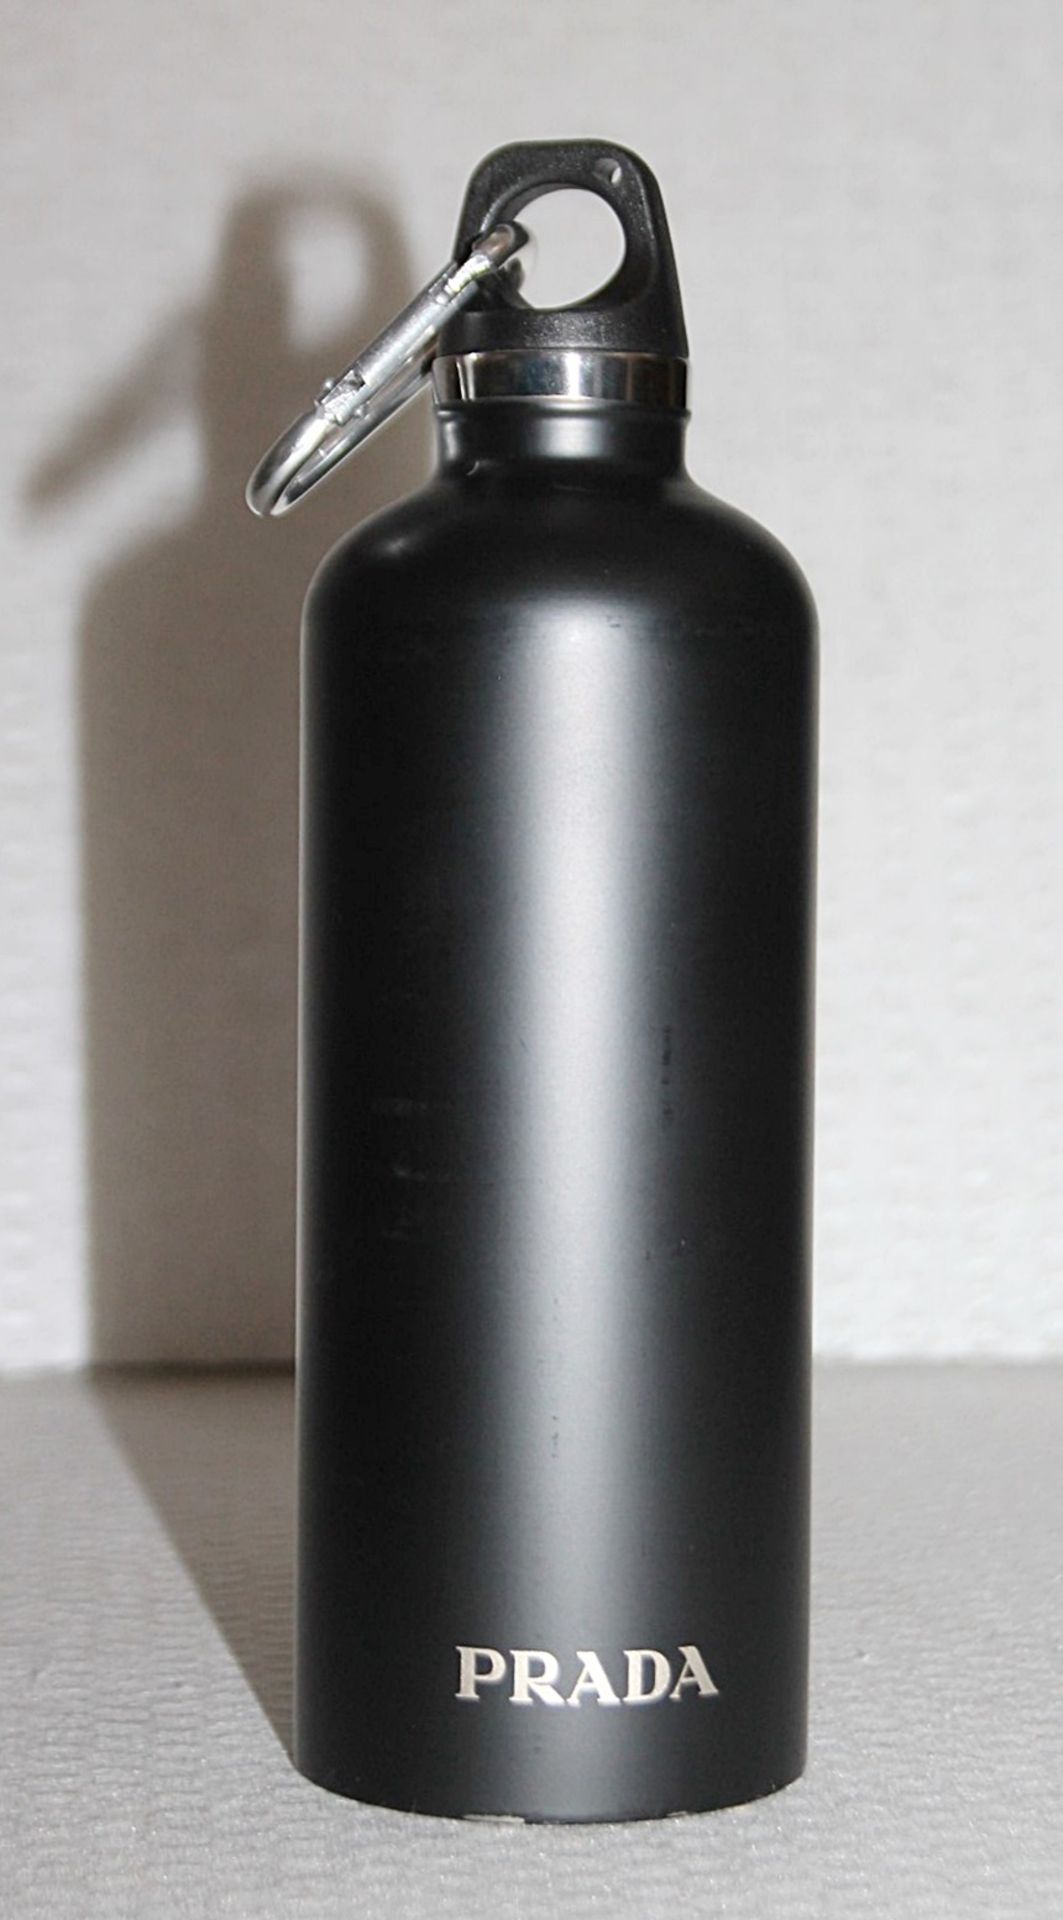 1 x PRADA Stainless Steel Water Bottle In Black, 500 ml - Original Price £90.00 - Unused Boxed Stock